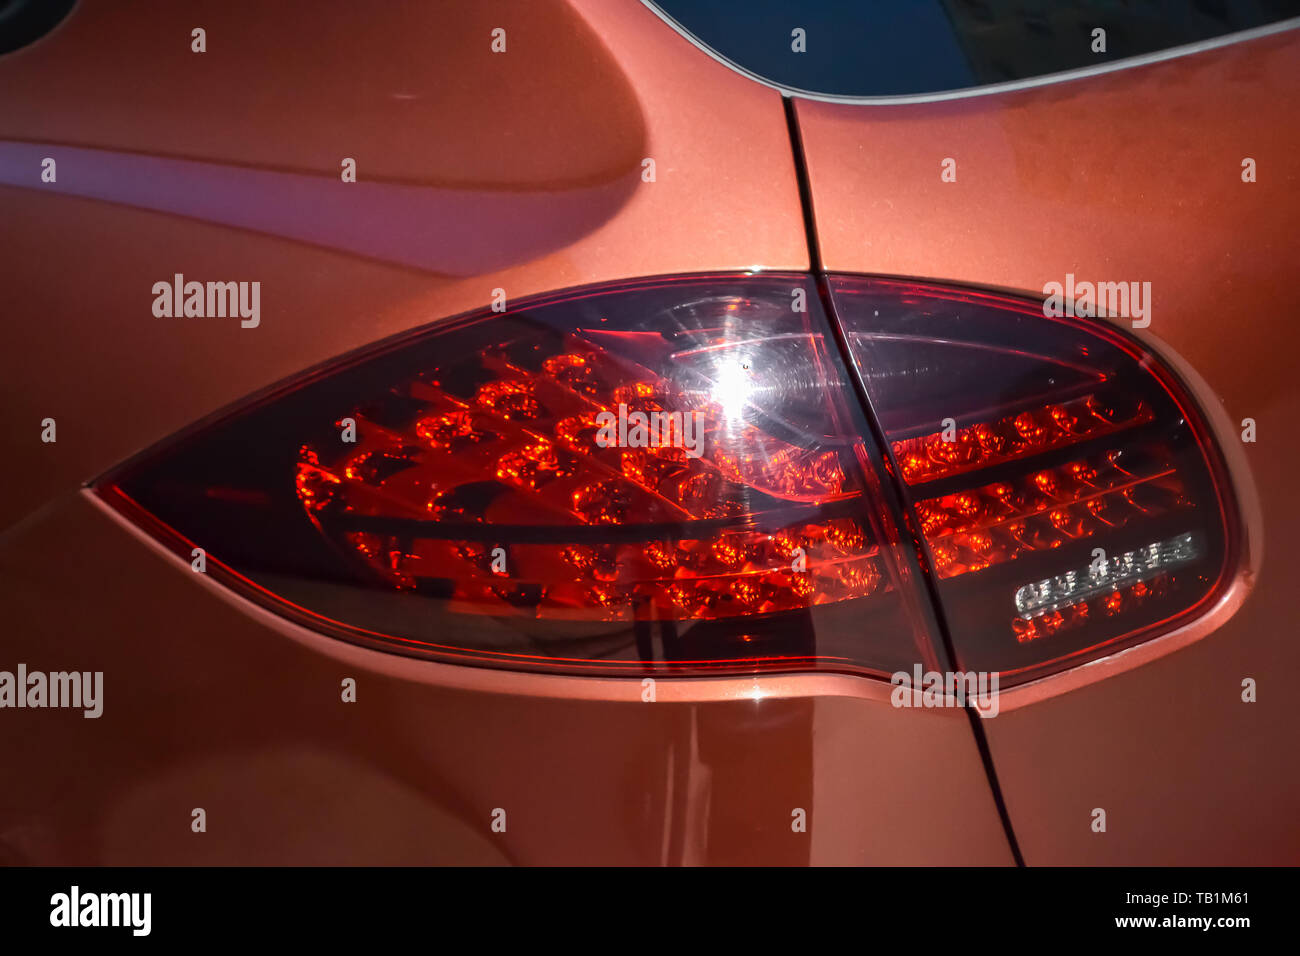 Nowosibirsk, Russland - 05.29.2019: Hinten schlußlicht Blick auf Porsche Cayenne 958 2013 in brauner Farbe nach der Reinigung vor dem Verkauf an einem sonnigen Sommertag mit Stockfoto